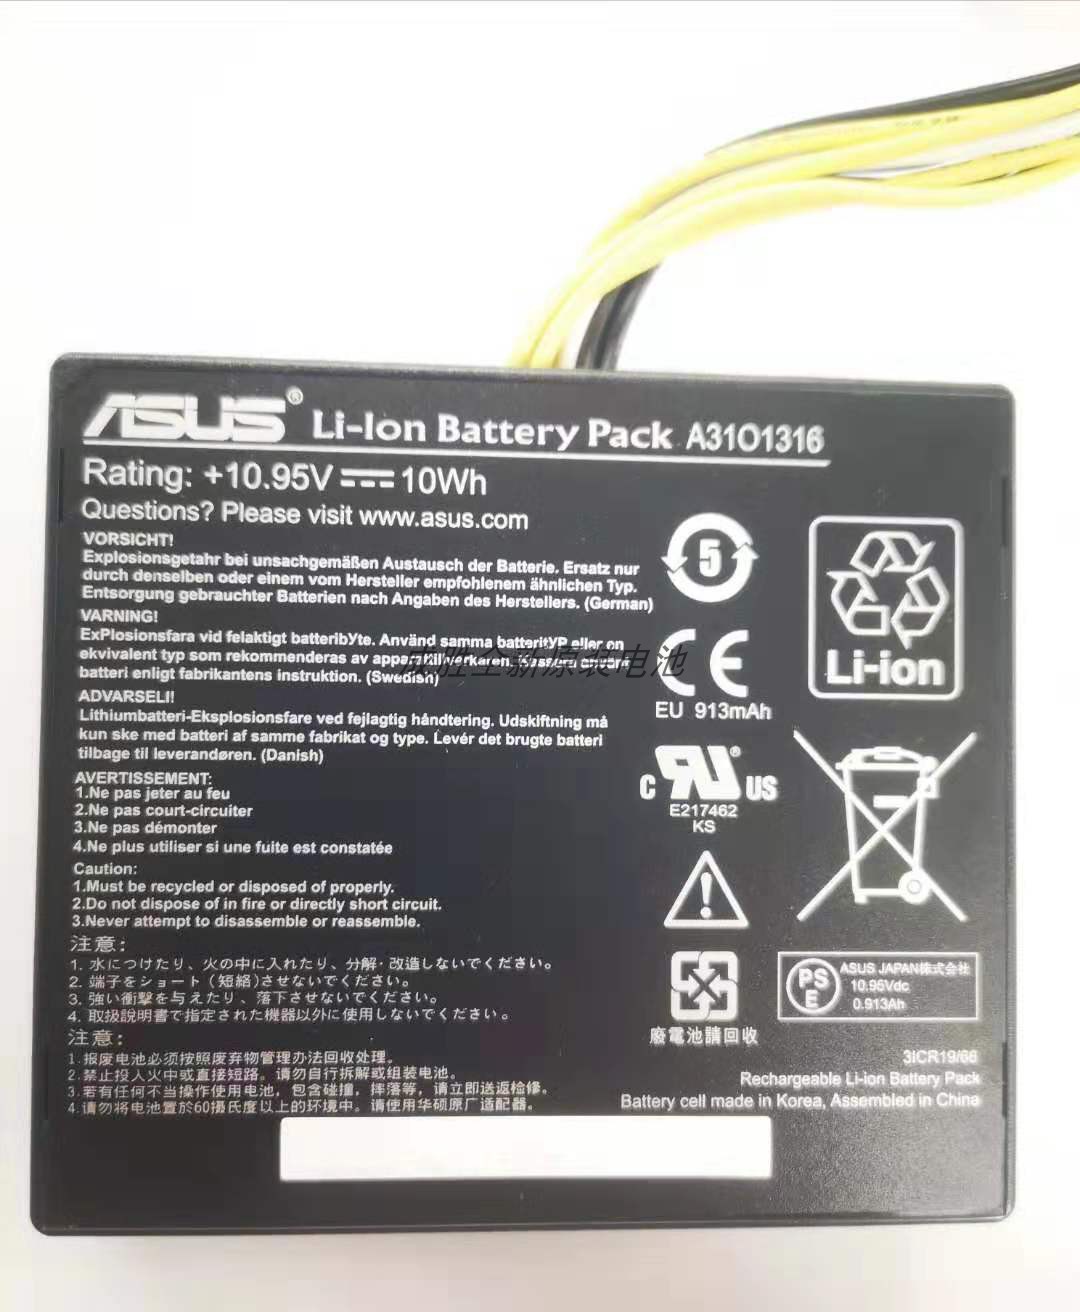 Batterie originale Asus A31O1316 0B110-00270000 A3101316 10.95V 913mAh, 10Wh pour ordinateur portable Asus M70AD séries